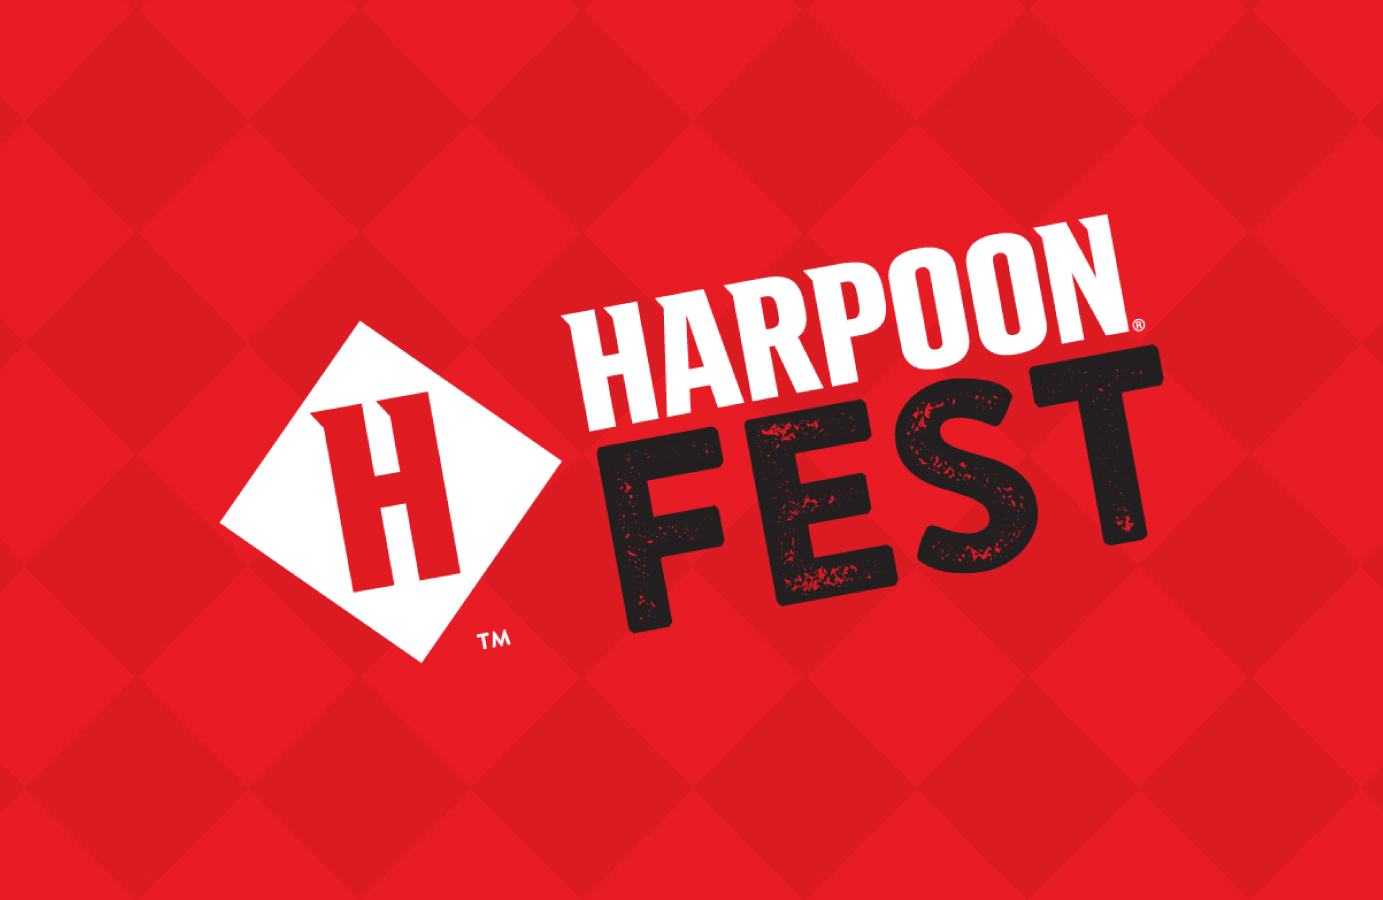 harpoon fest october 2014